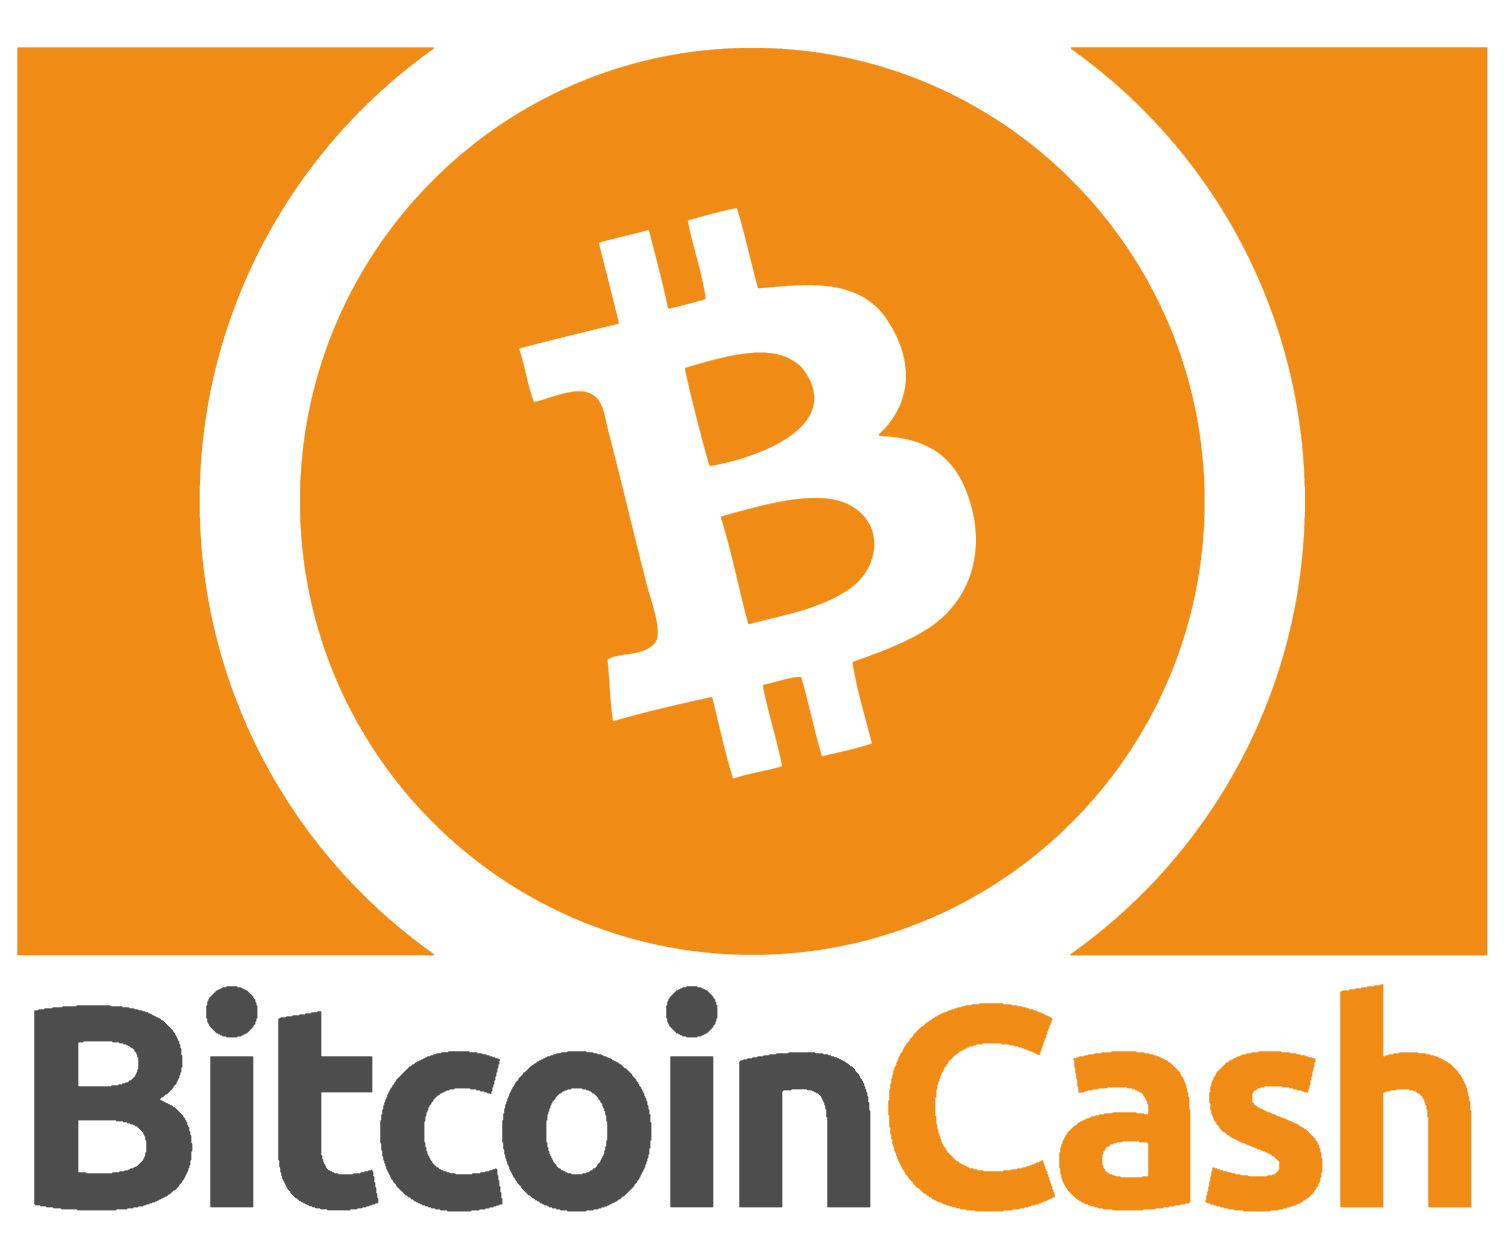 news on bitcoin cash